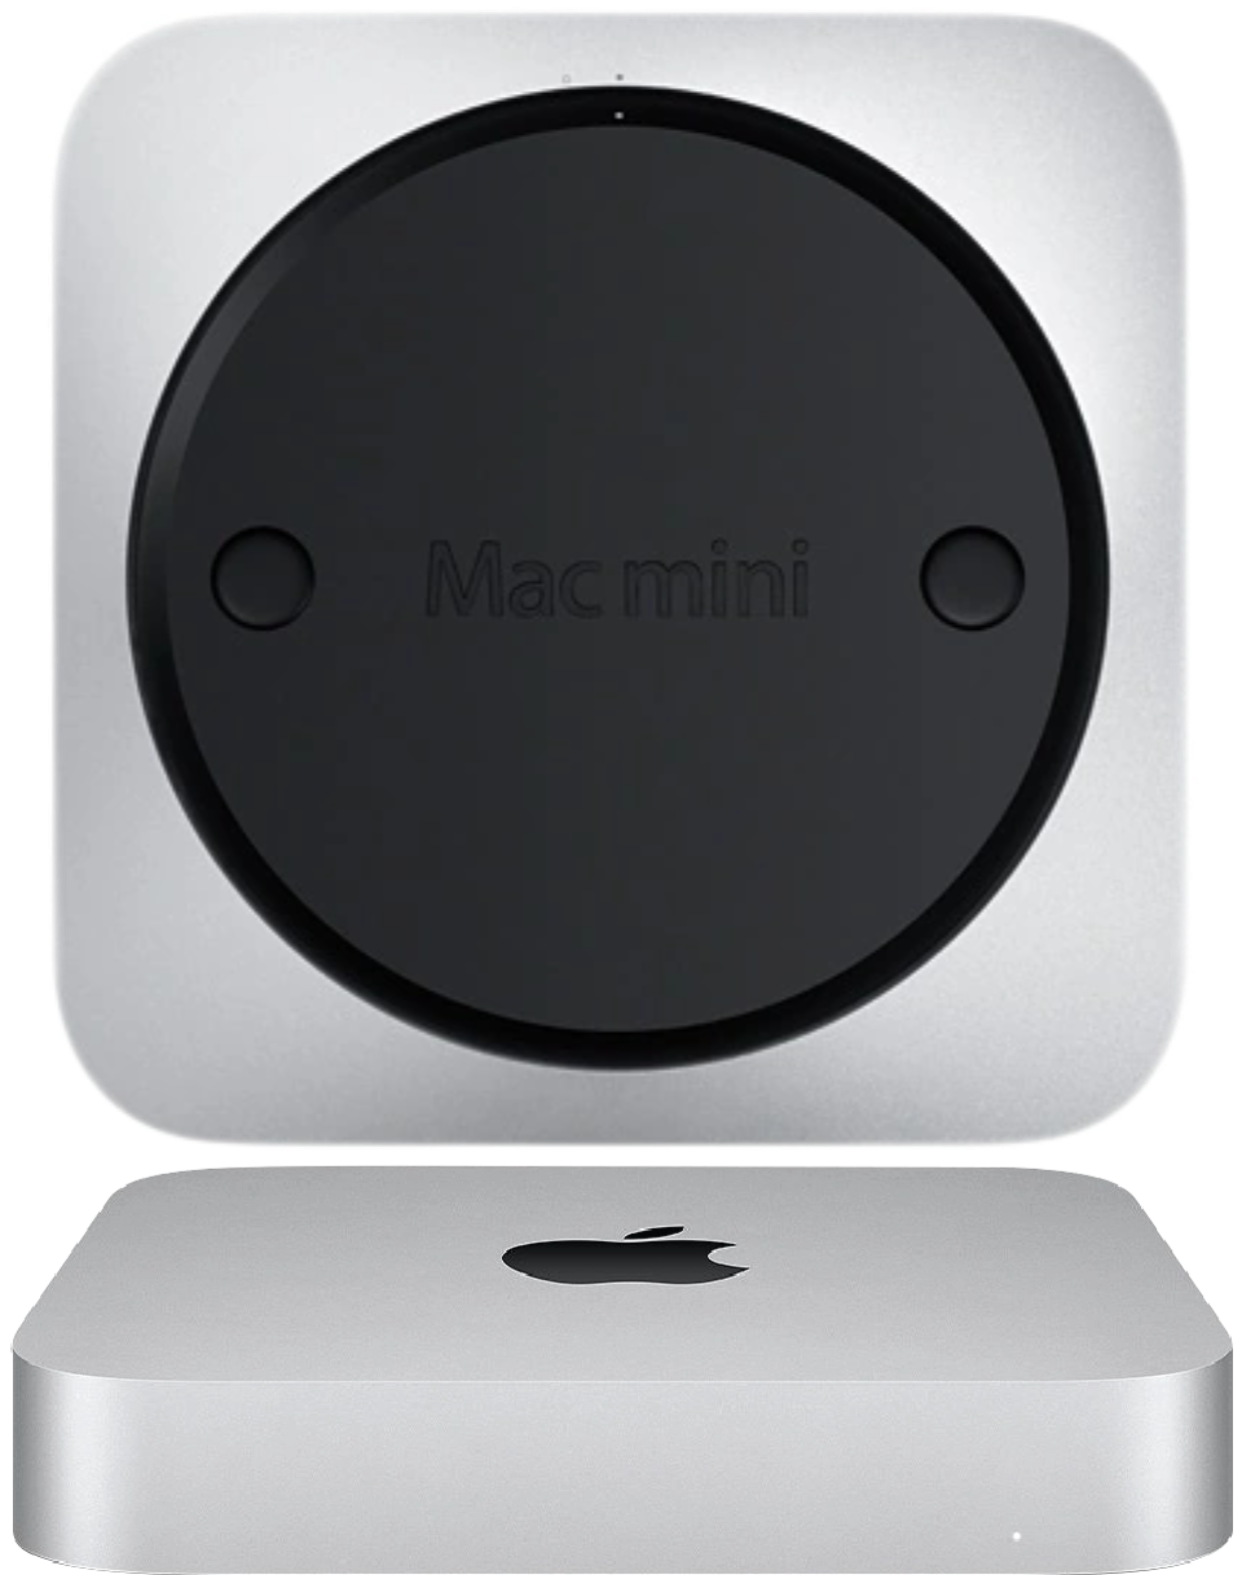 Mac mini (M1)